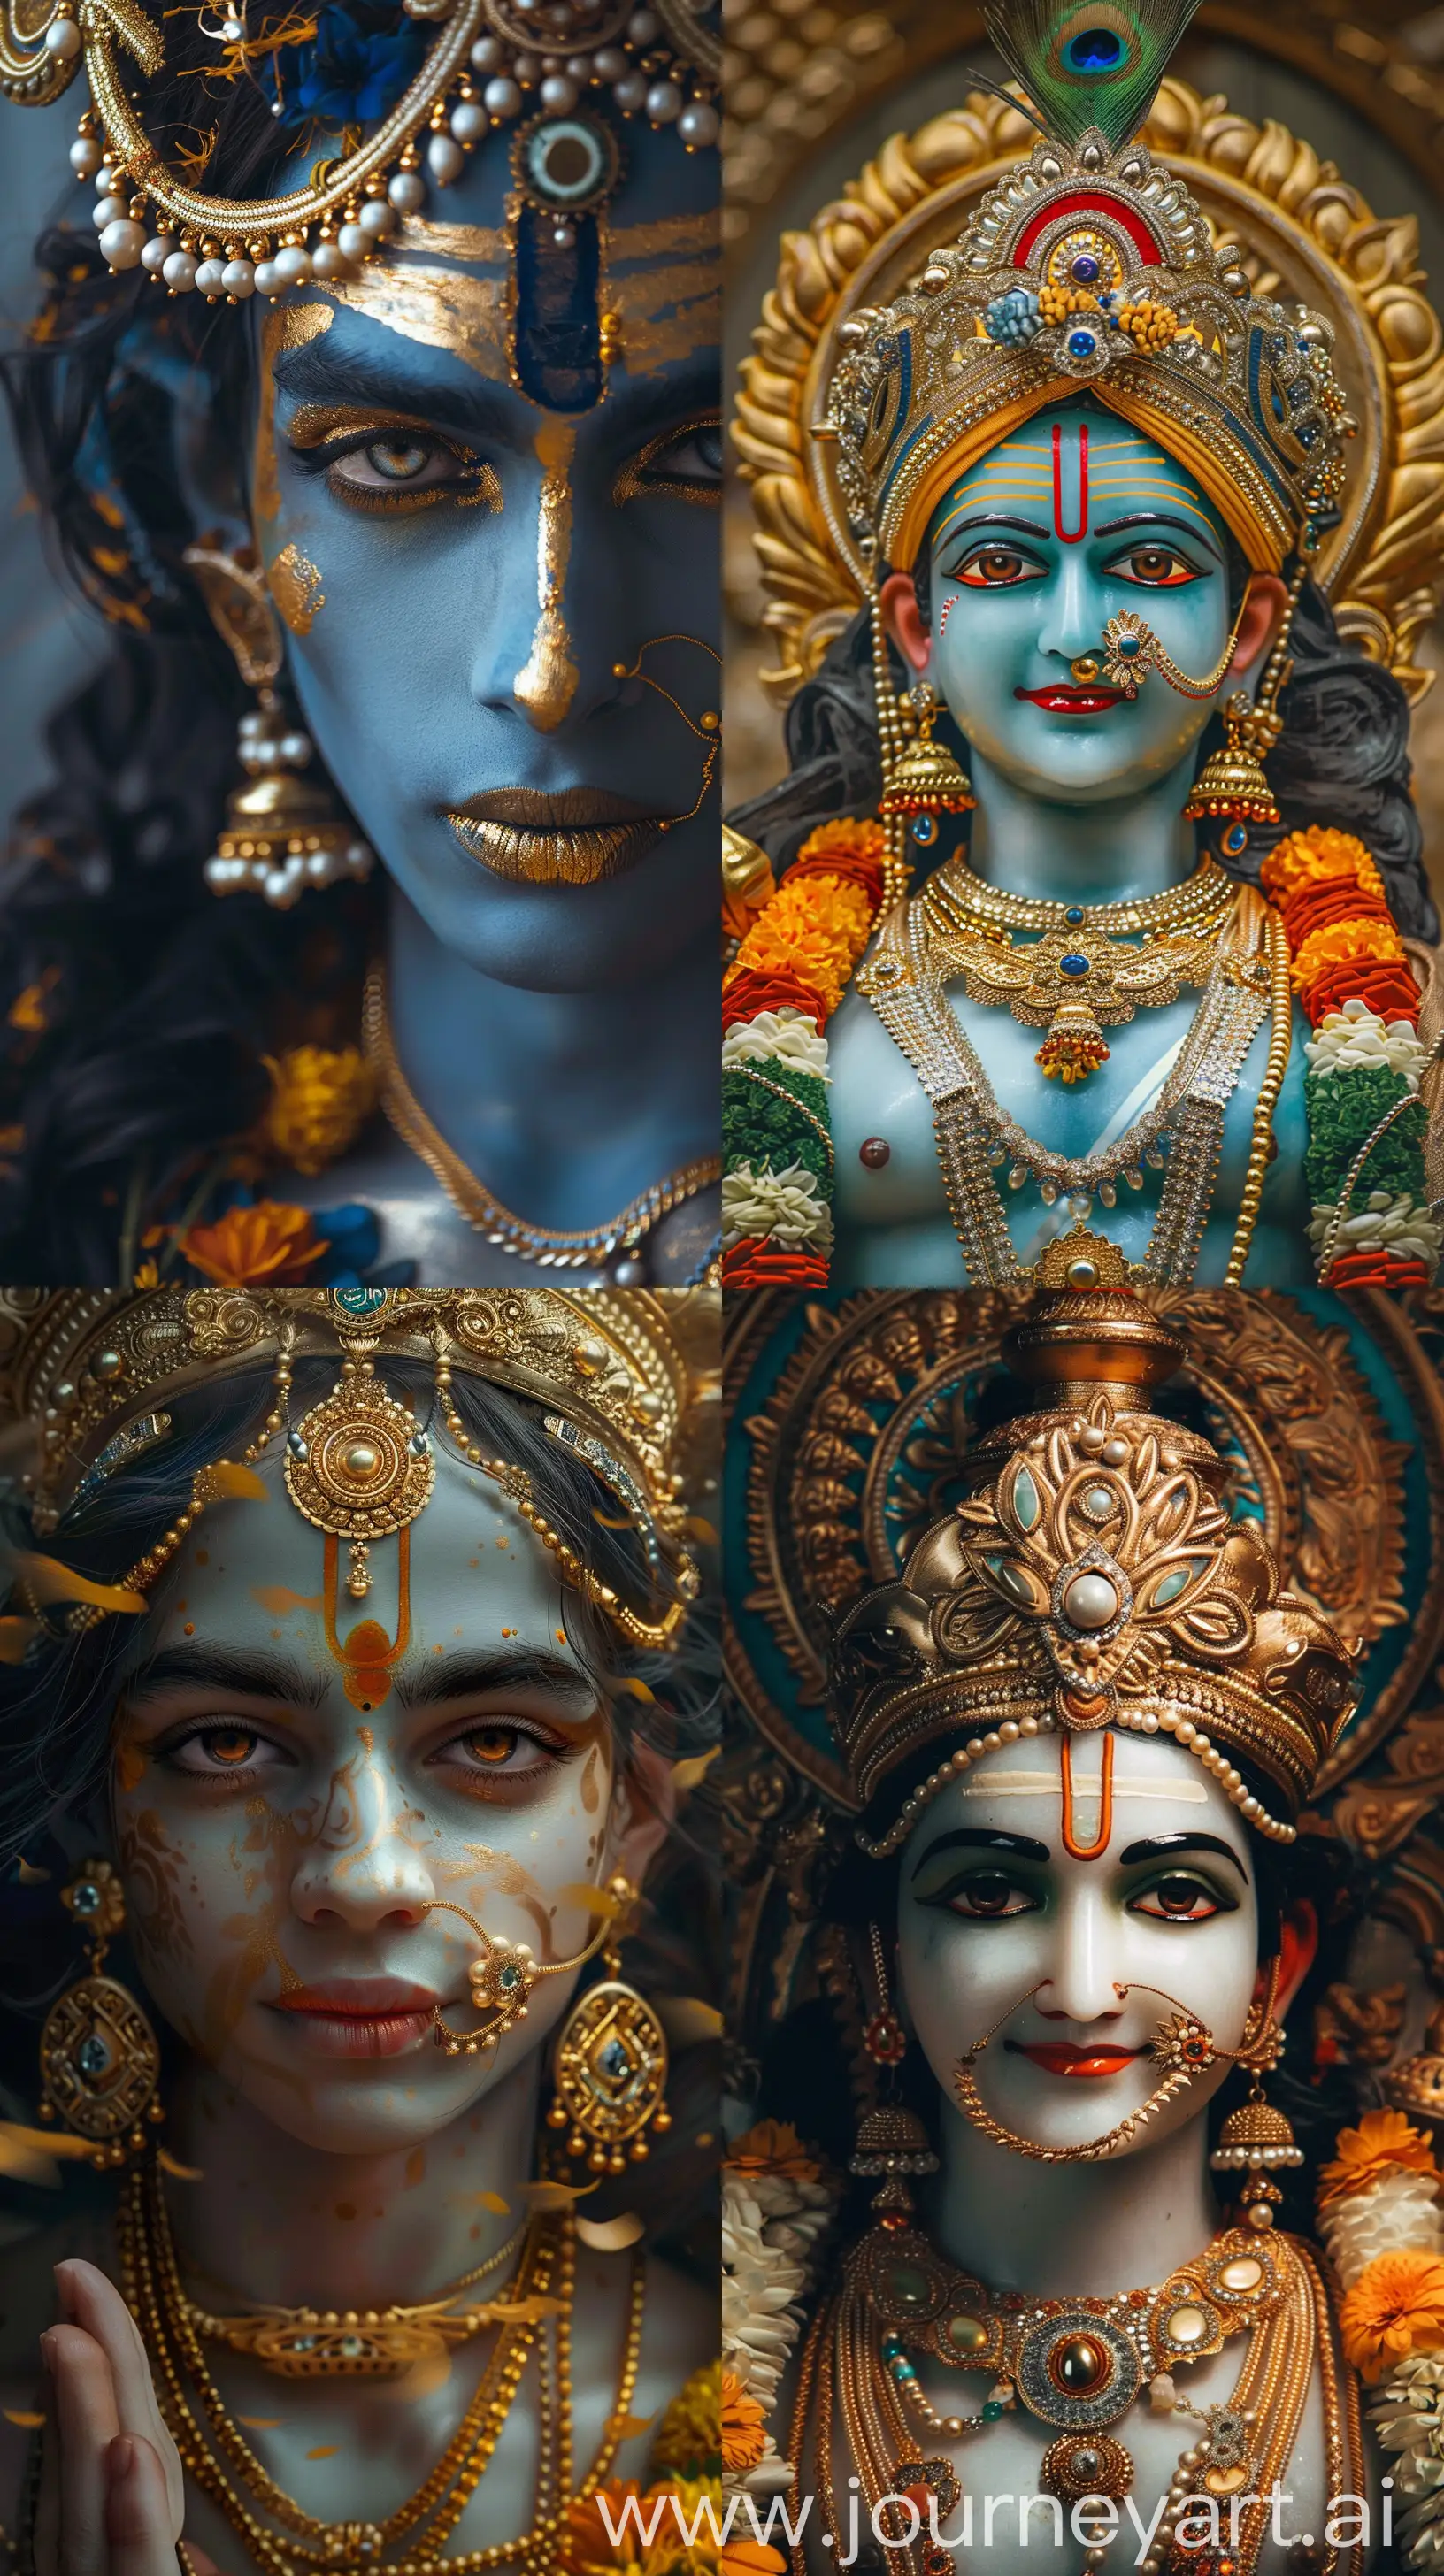 Spiritual-Hindu-God-Shree-Rama-Wearing-Golden-Indian-King-Raja-Jewelry